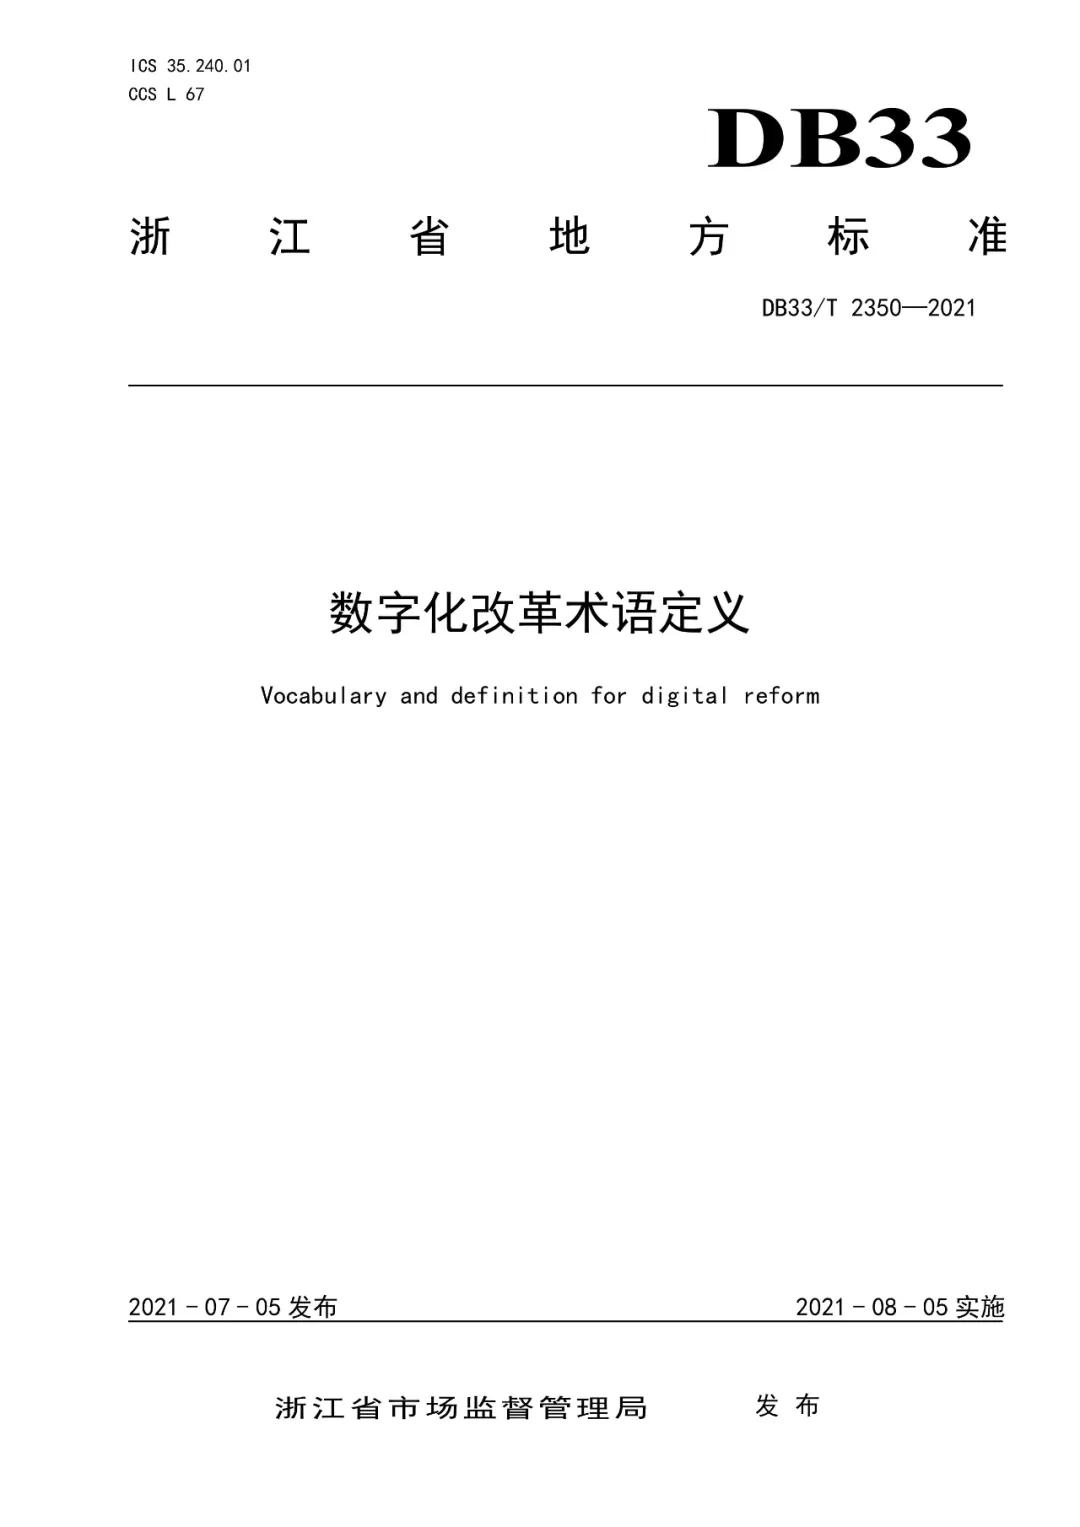 浙江发布《数字化改革术语定义》省级地方标准